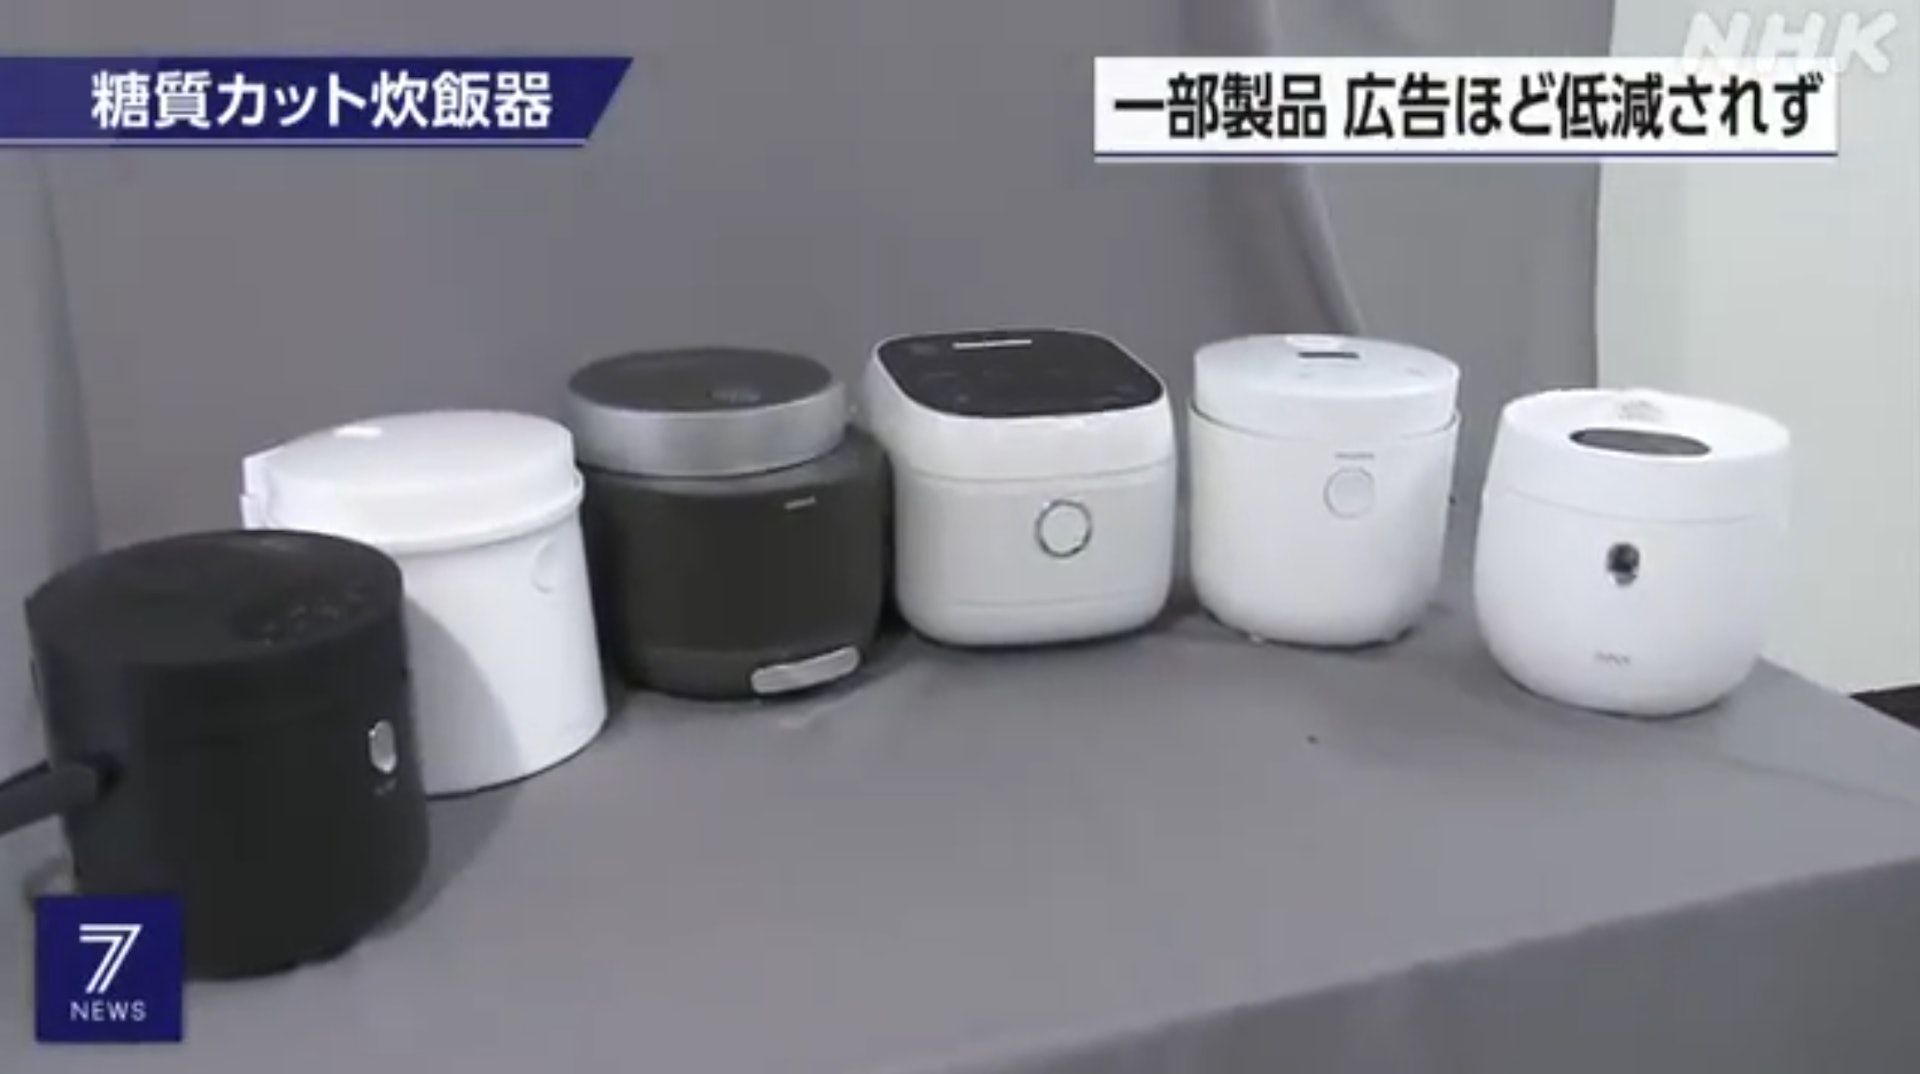 日本多家品牌也推出「減醣電飯煲」，號稱可以大幅減少醣類攝取，吸引消費者購買。然而，日本國民生活中心實測後，發現減醣電飯煲煮出來的白飯，含醣總量與一般電飯煲沒有太大差異。（NHK報道截圖）